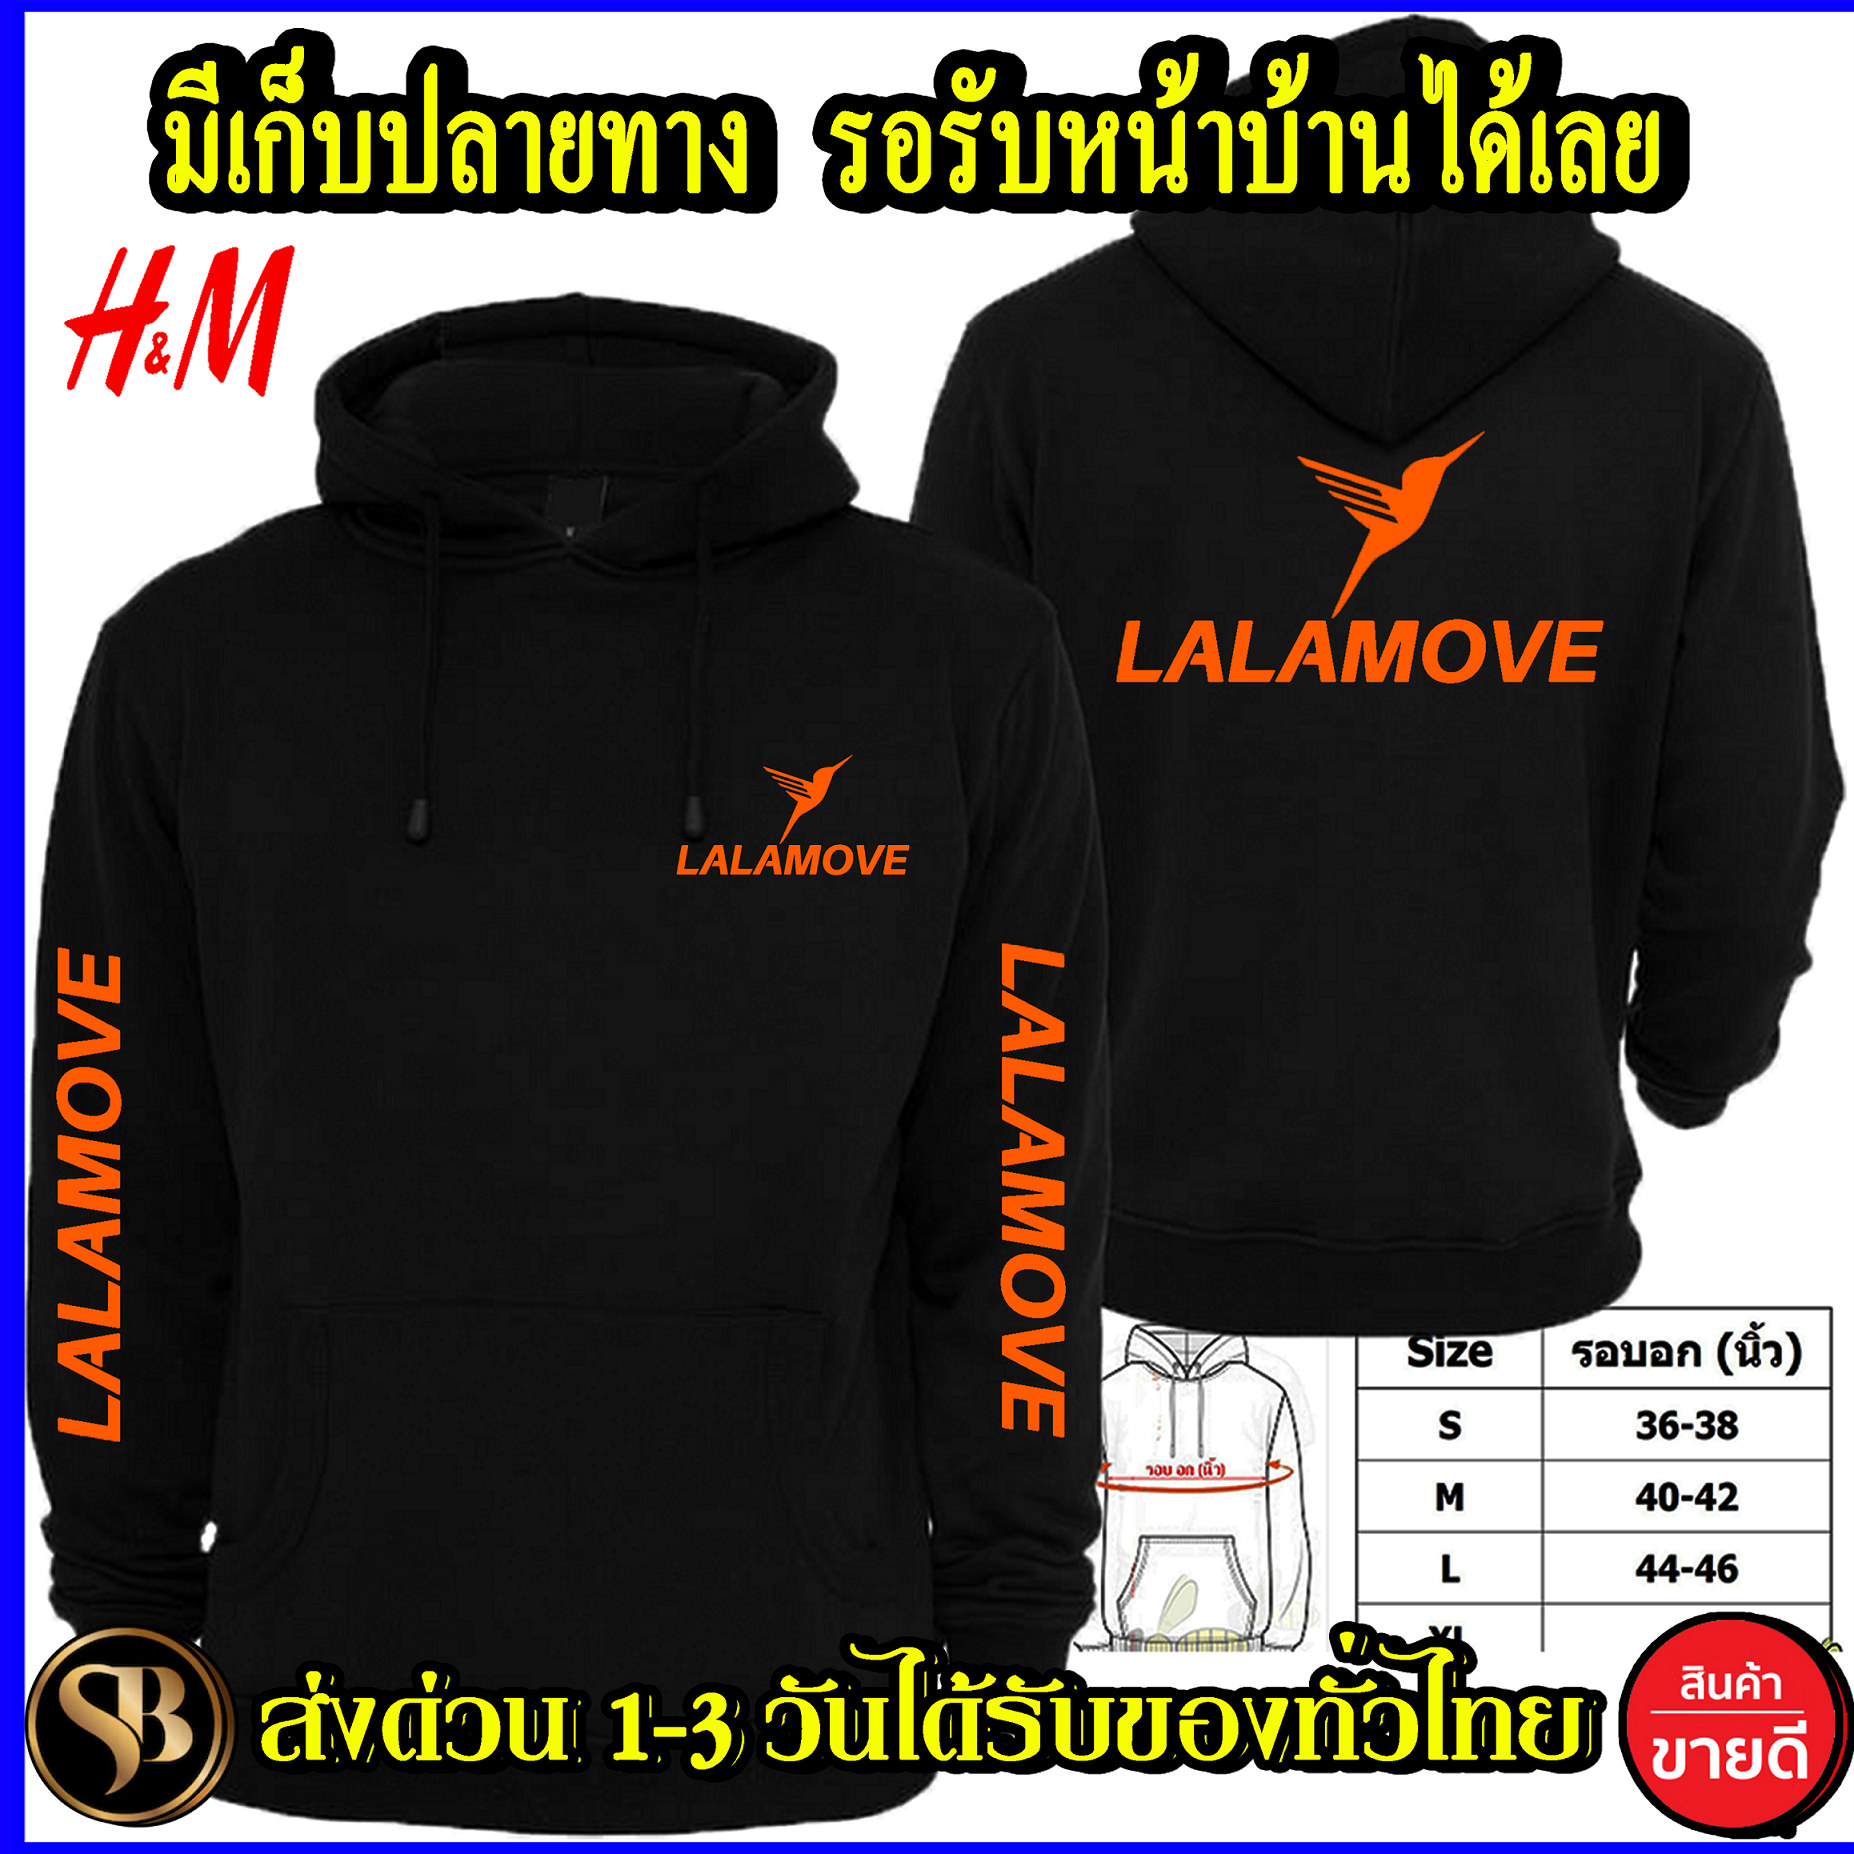 LINE MAN เสื้อฮู้ด Lalamove งาน H&M โลโก้สีสด HOODIE แบบซิป สวม สกรีนแบบเฟล็ก PU สวยสดไม่แตกไม่ลอก ส่งด่วนทั่วไทย